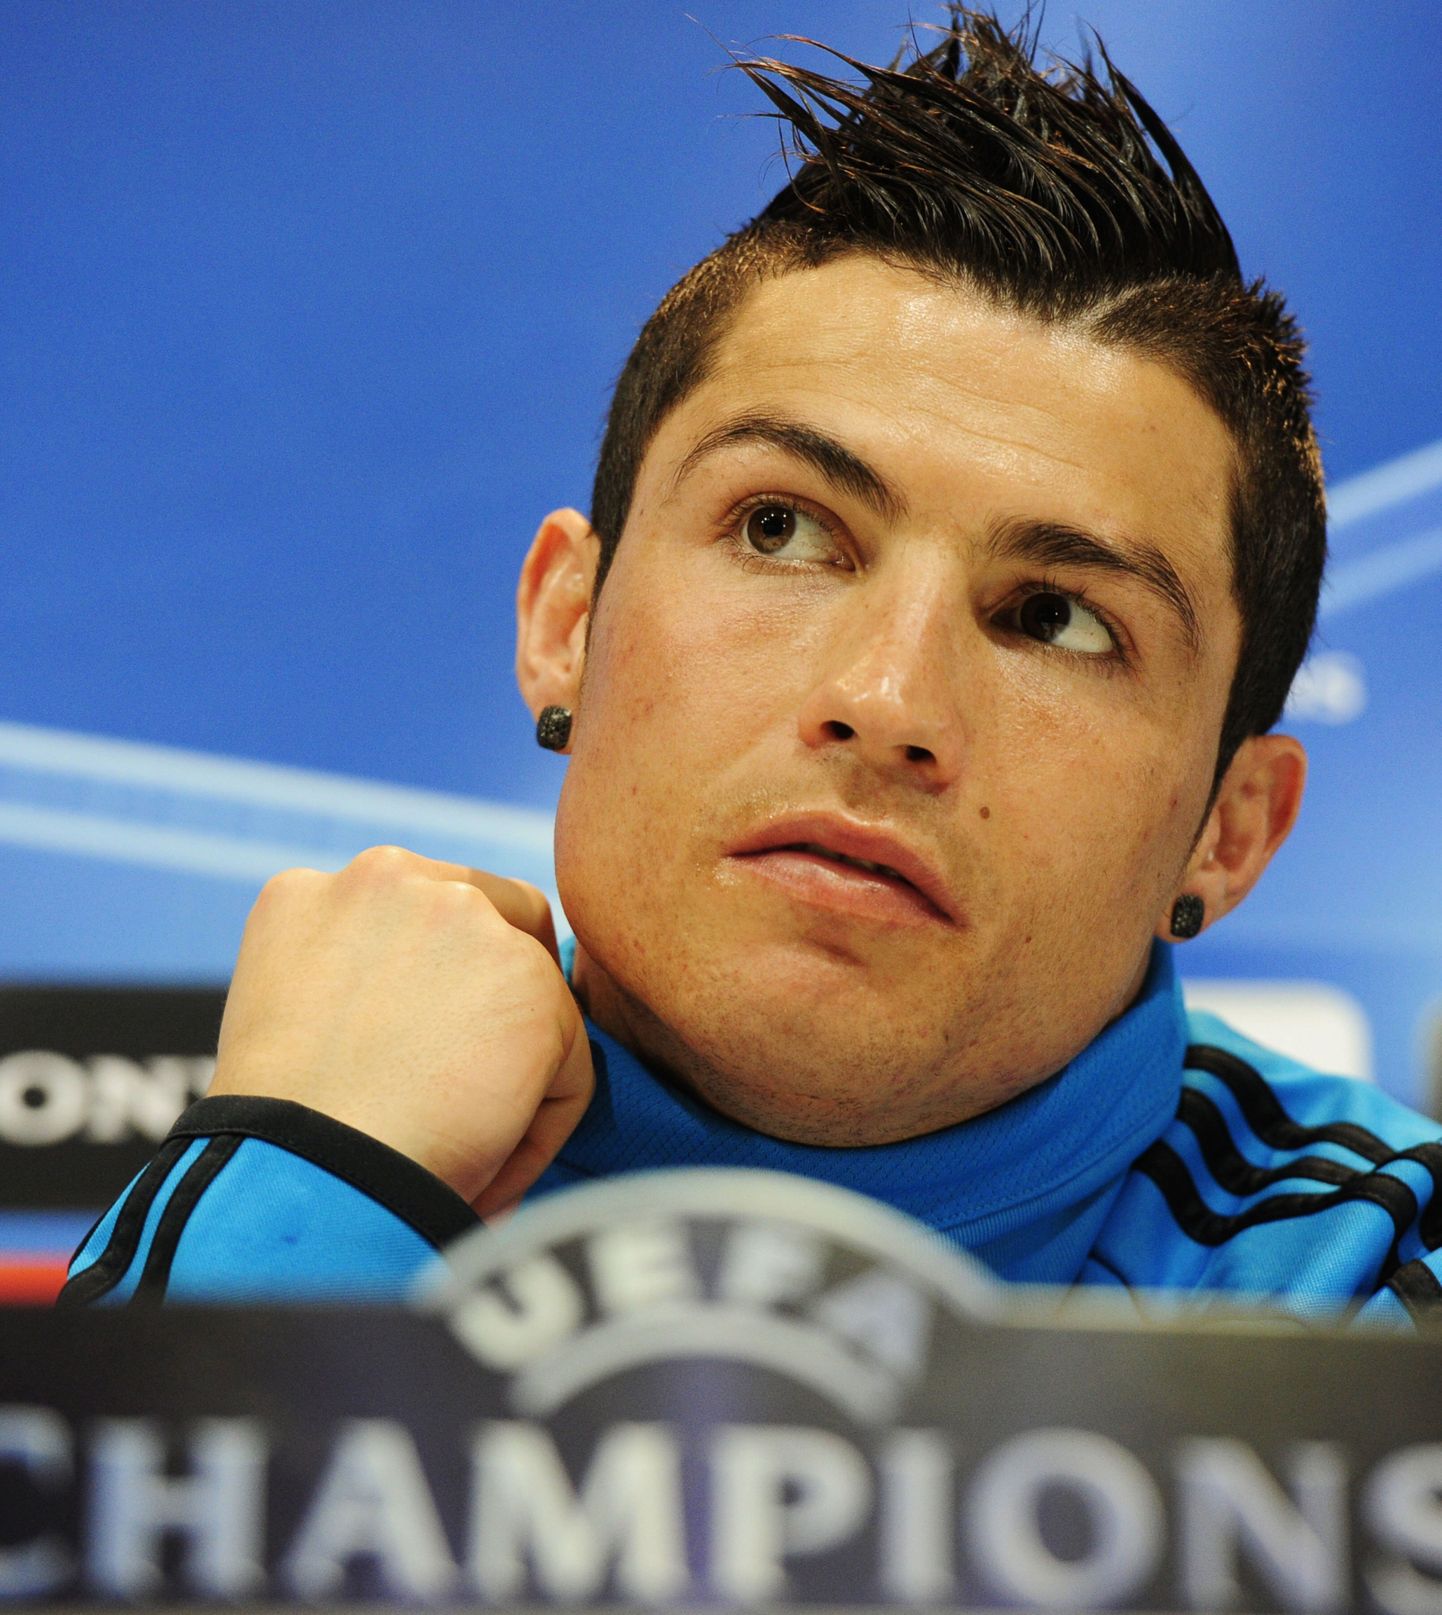 На предматчевой пресс-конференции в Мадриде 13 марта выяснилось, что форвард "Реала" Роналду сделал новую прическу.